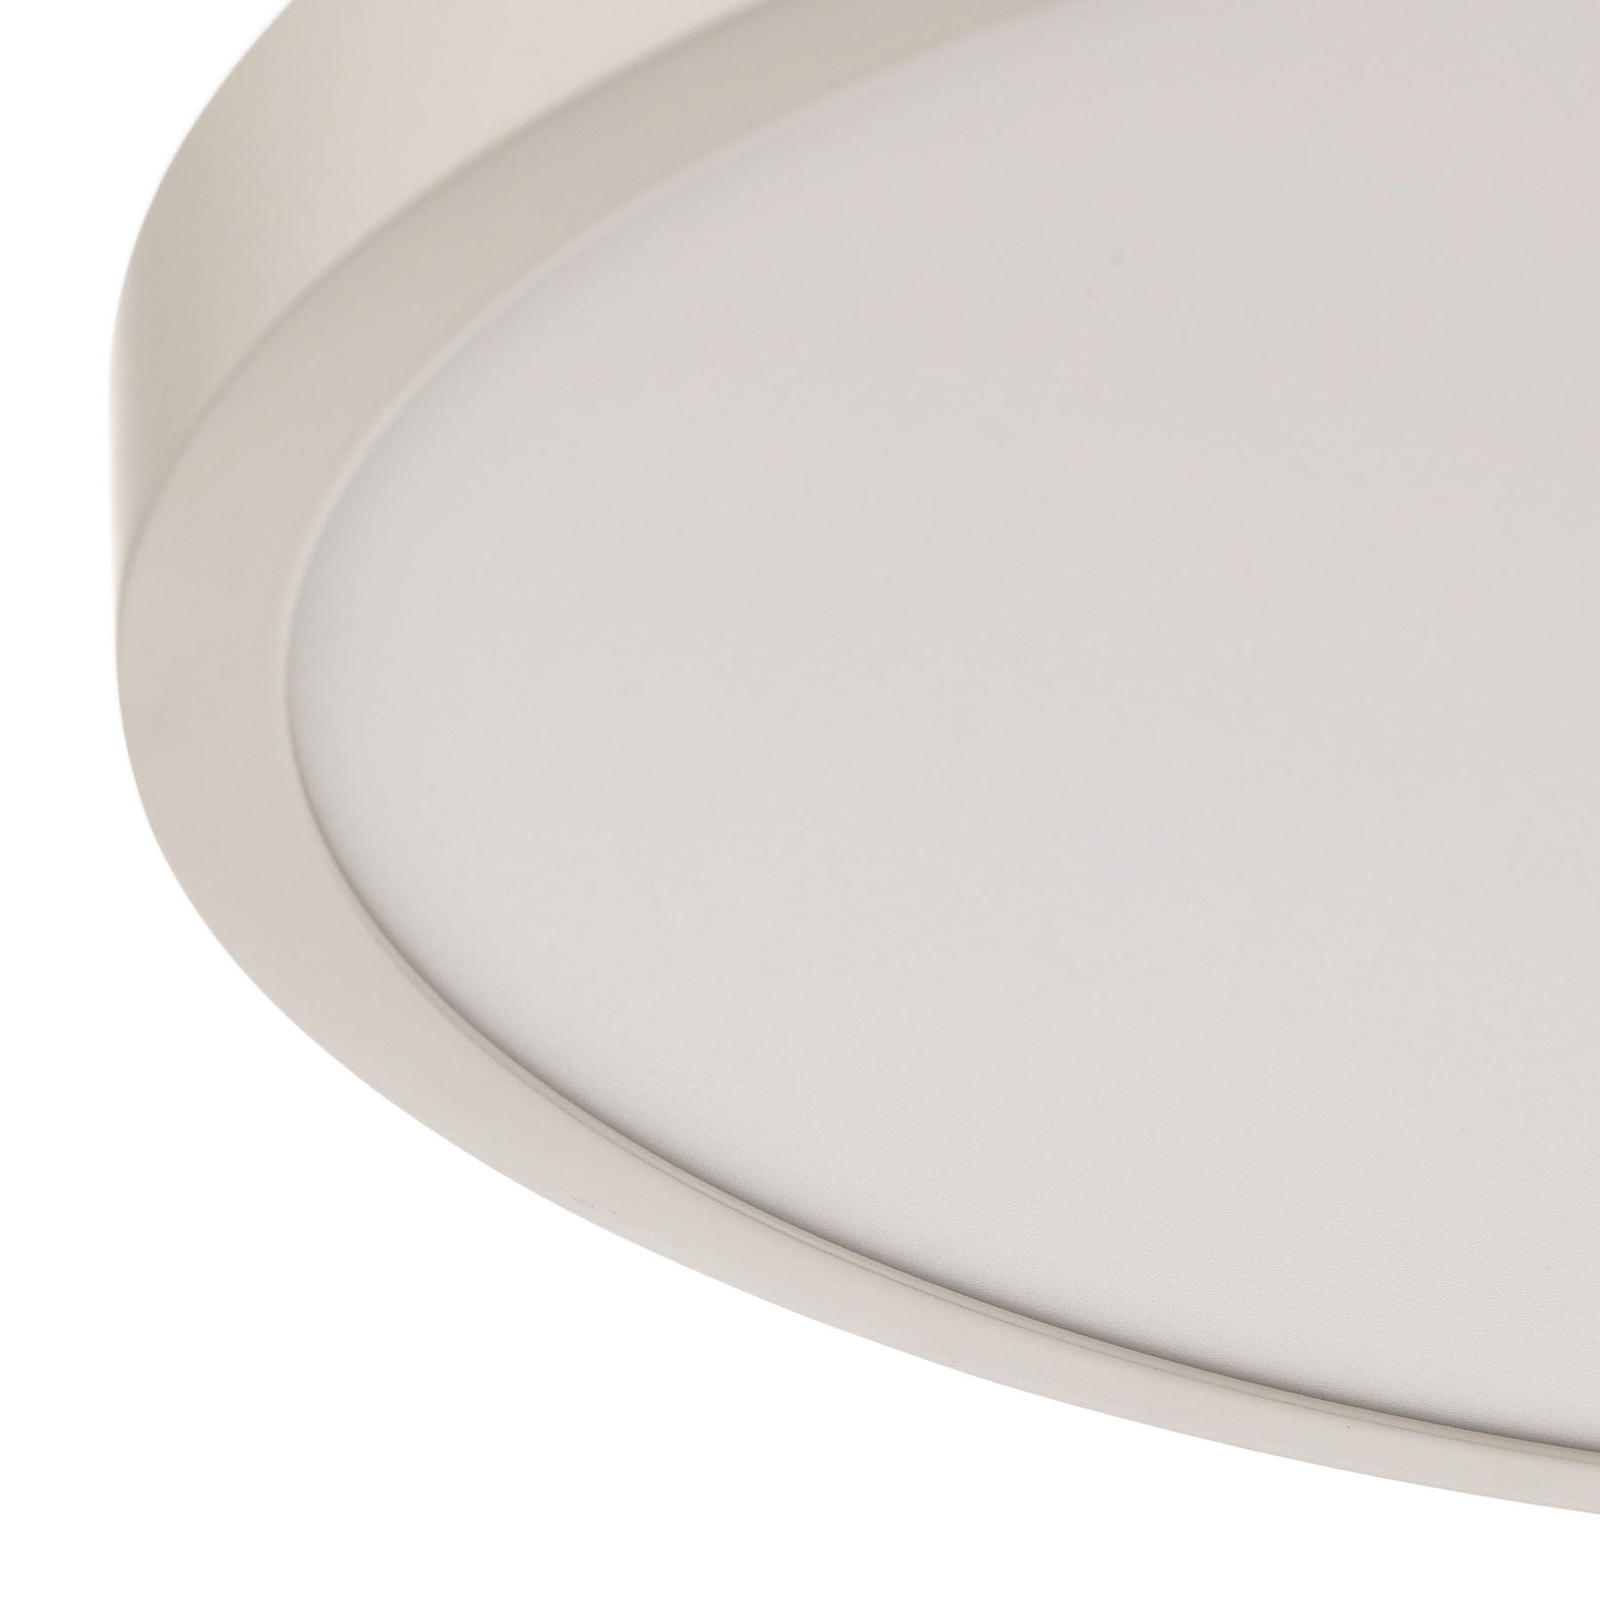 rechtop Woordenlijst gelijkheid Ultra platte LED plafondlamp Lero | Lampen24.be